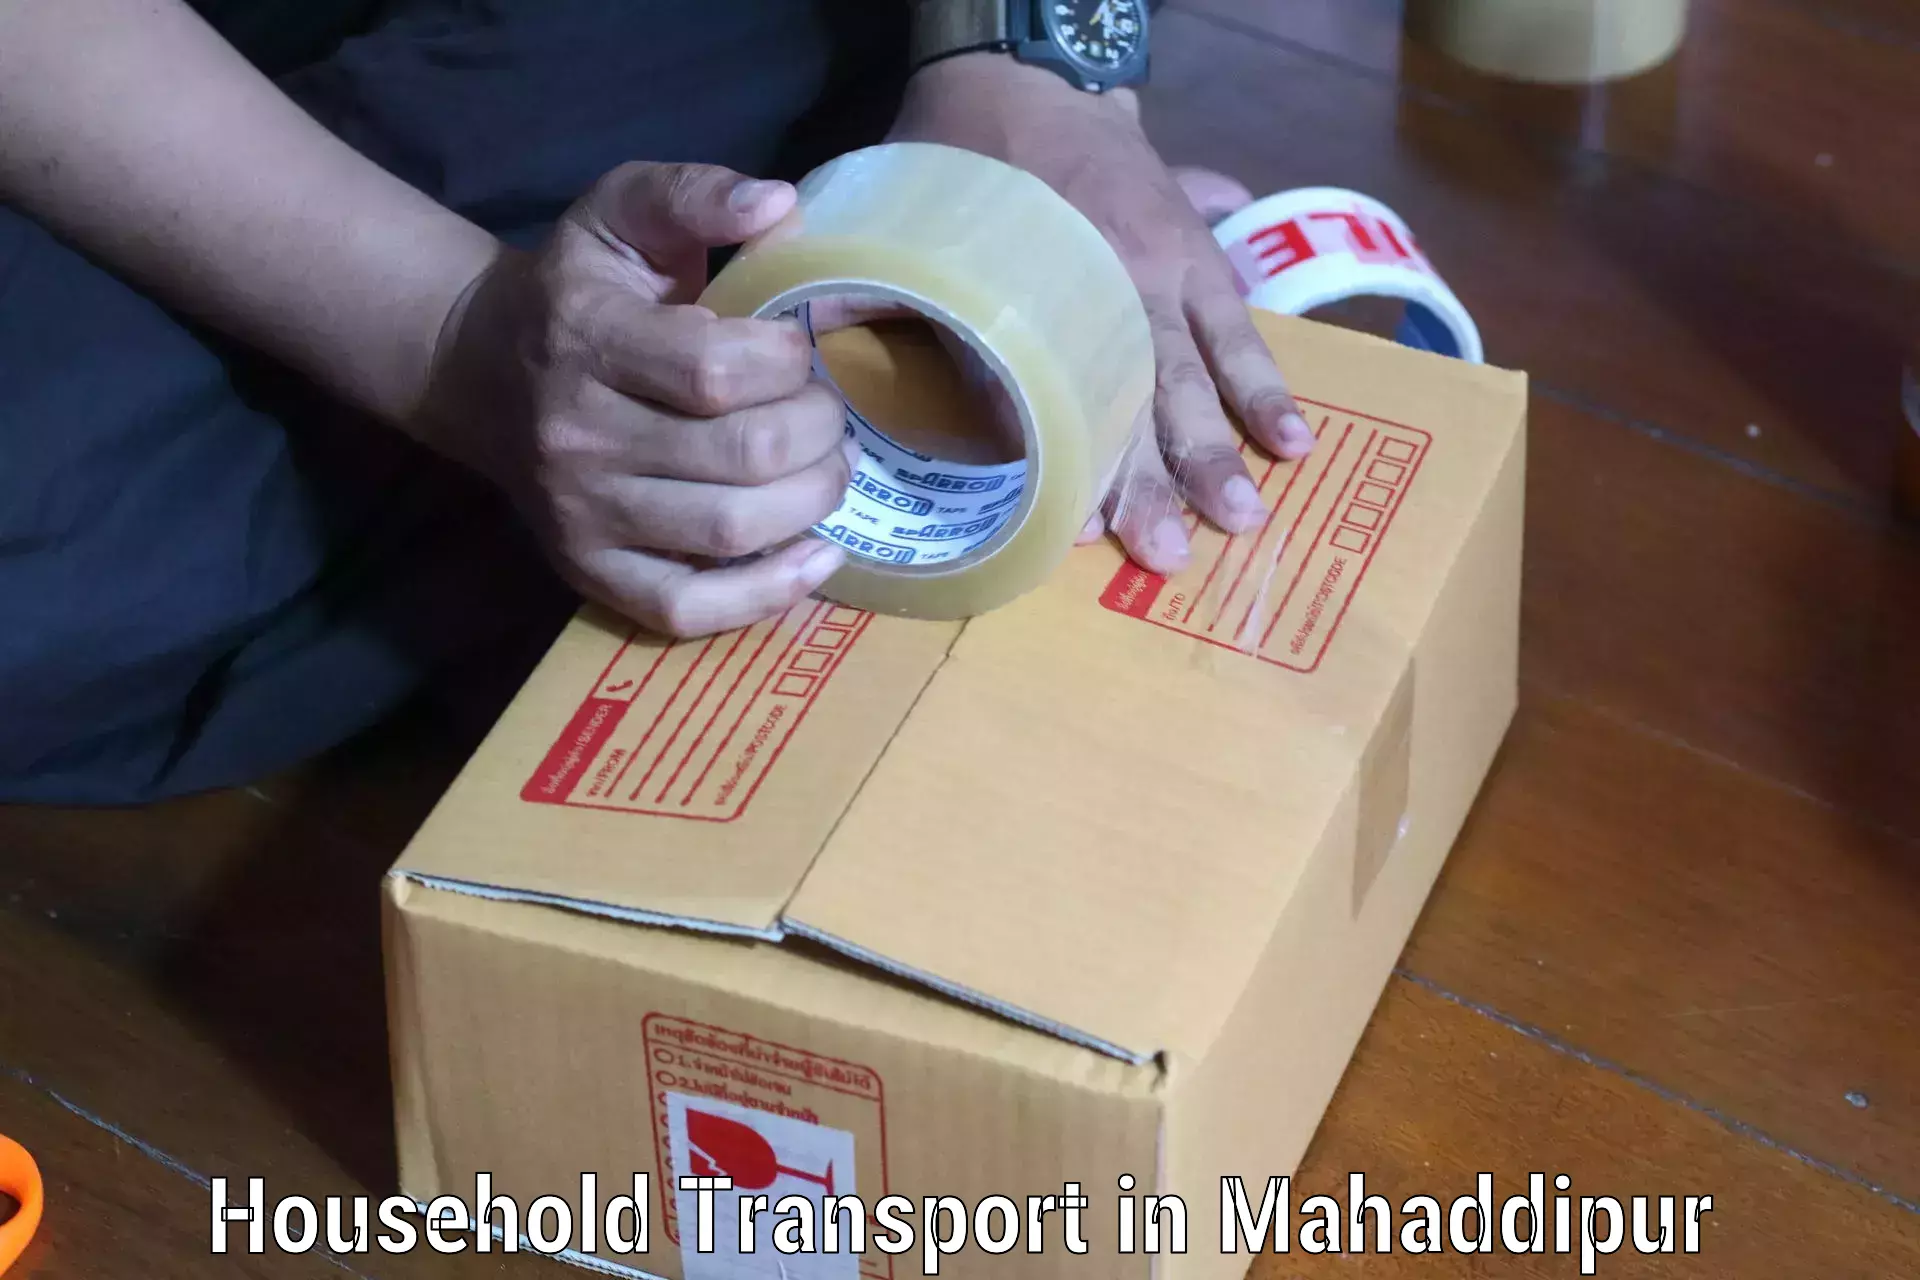 Household transport experts in Mahaddipur